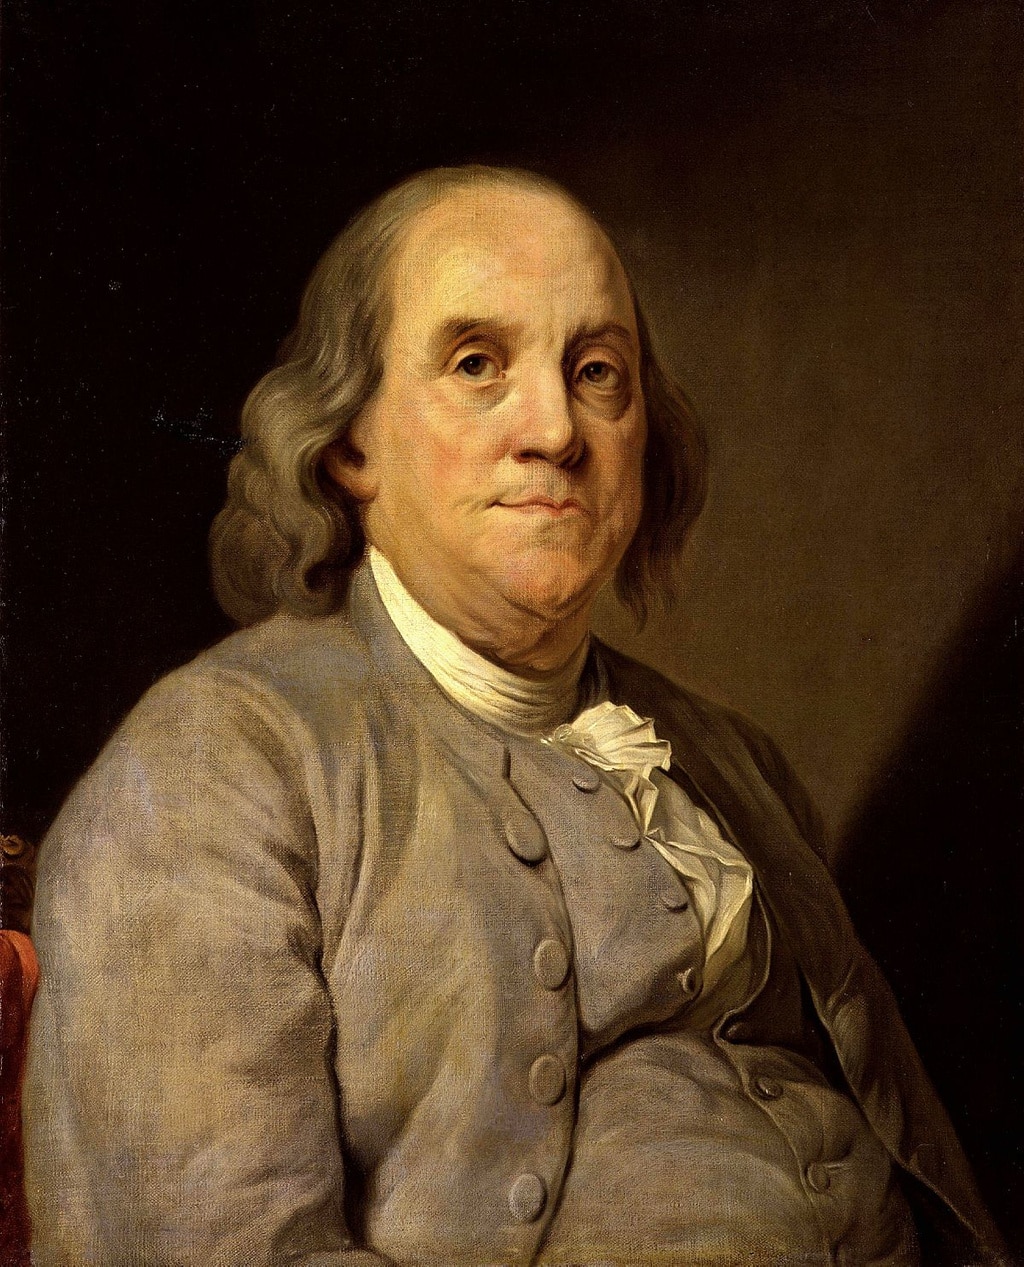 El matrimonio de Benjamin Franklin se rompió porque su esposa era antivacunas